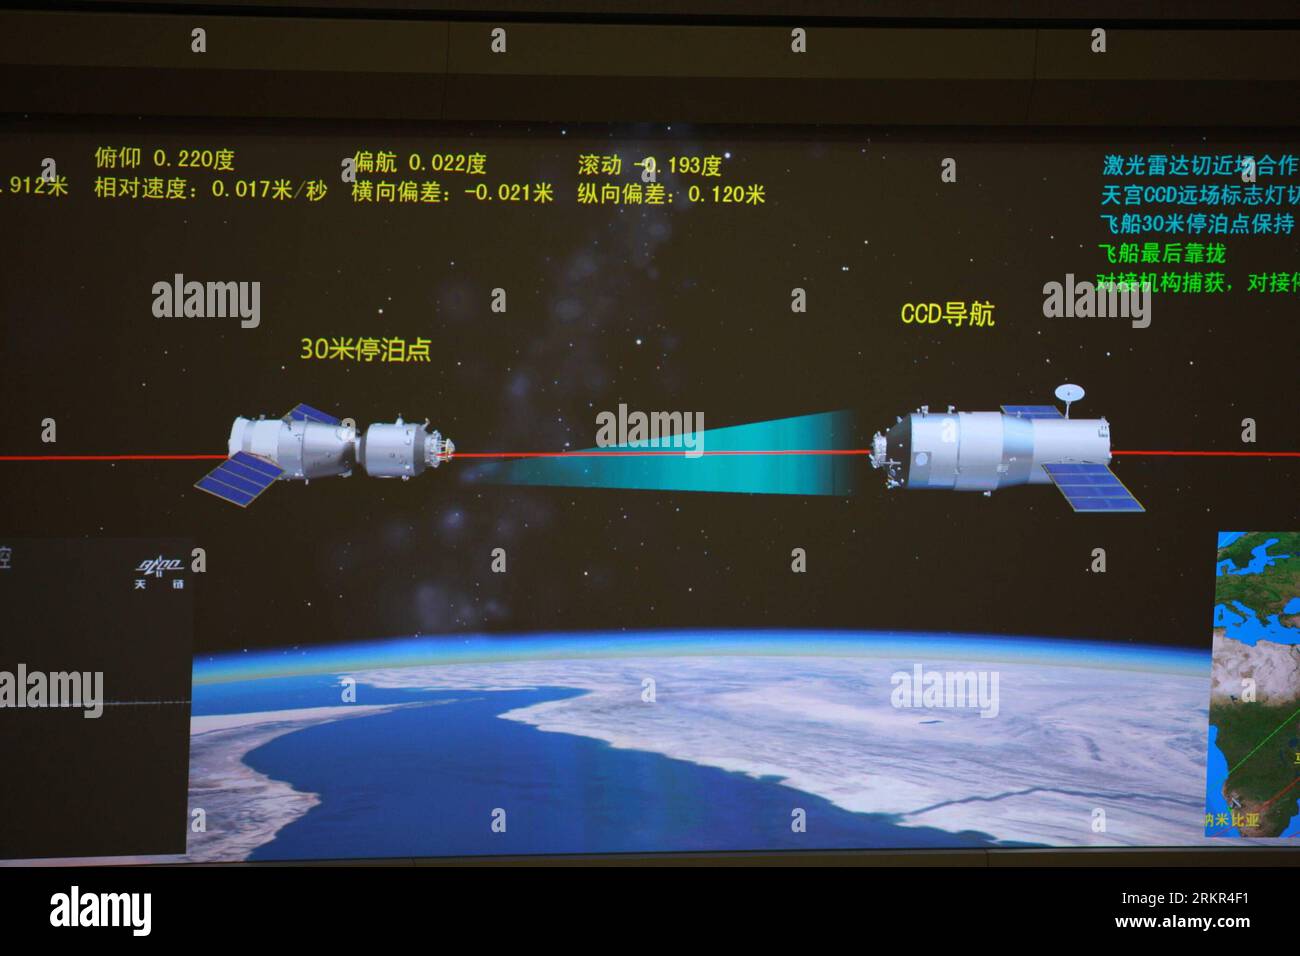 Bildnummer : 58115822 Datum : 18.06.2012 Copyright : imago/Xinhua (120618) -- PÉKIN, 18 juin 2012 (Xinhua) -- la photo prise le 18 juin 2012 montre l'écran du Centre de contrôle des vols aérospatiaux de Pékin montrant un vaisseau spatial habité Shenzhou-9 effectuant un amarrage automatique avec le module de laboratoire Tiangong-1 en orbite. (Xinhua/Wang Yongzhuo) (ry) (SHENZHOU-9-TIANGONG-1) CHINA-BEIJING-CONTROL CENTER-SHENZHOU-9-TIANGONG-1-DOCKING (CN) PUBLICATIONxNOTxINxCHN Politik Raumfahrt IX Andockmanöver Capture d'écran xjh x0x 2012 quer premiumd 58115822 Date 18 06 2012 Copyright Imago XINHUA Pékin juin 18 201 Banque D'Images